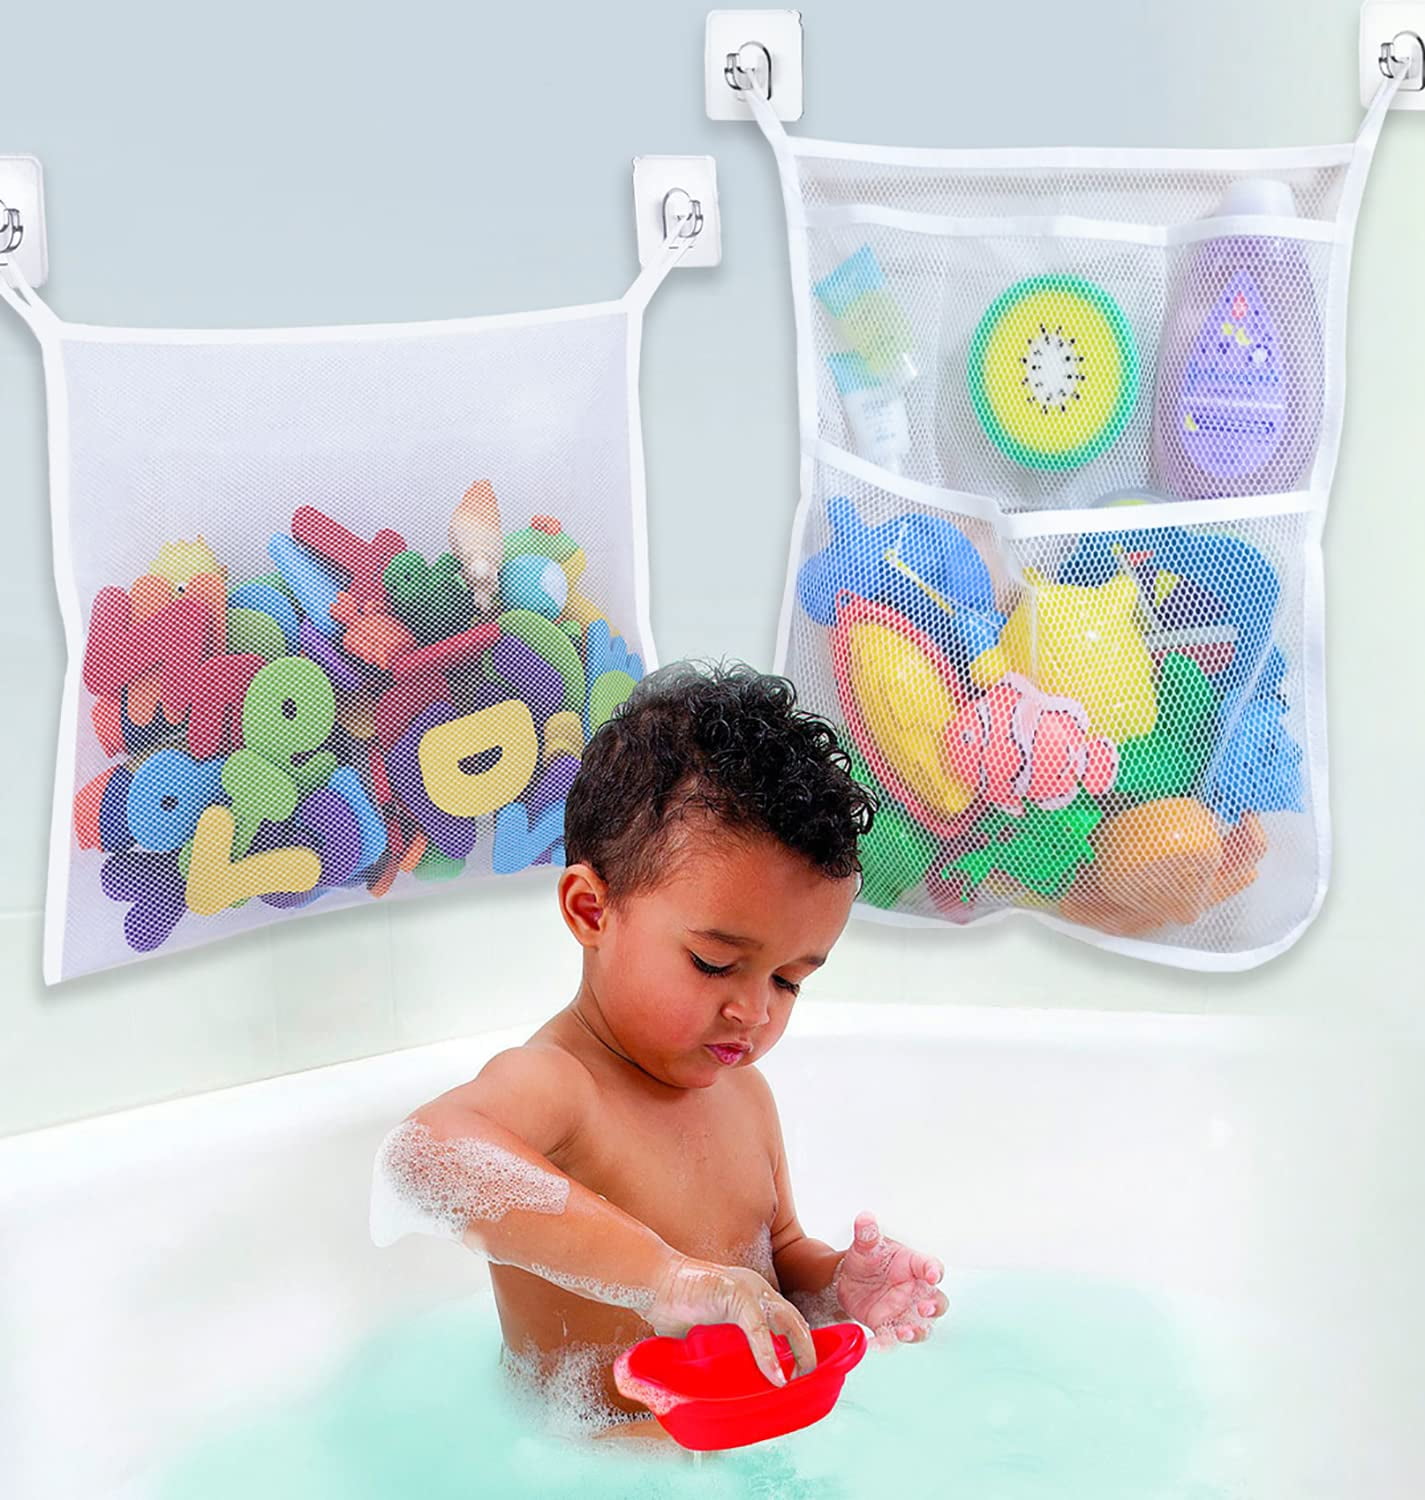 Pizies Baby Bath Bathtub Bathroom Toy Mesh Net Storage Bag Organizer Holder,Suct 